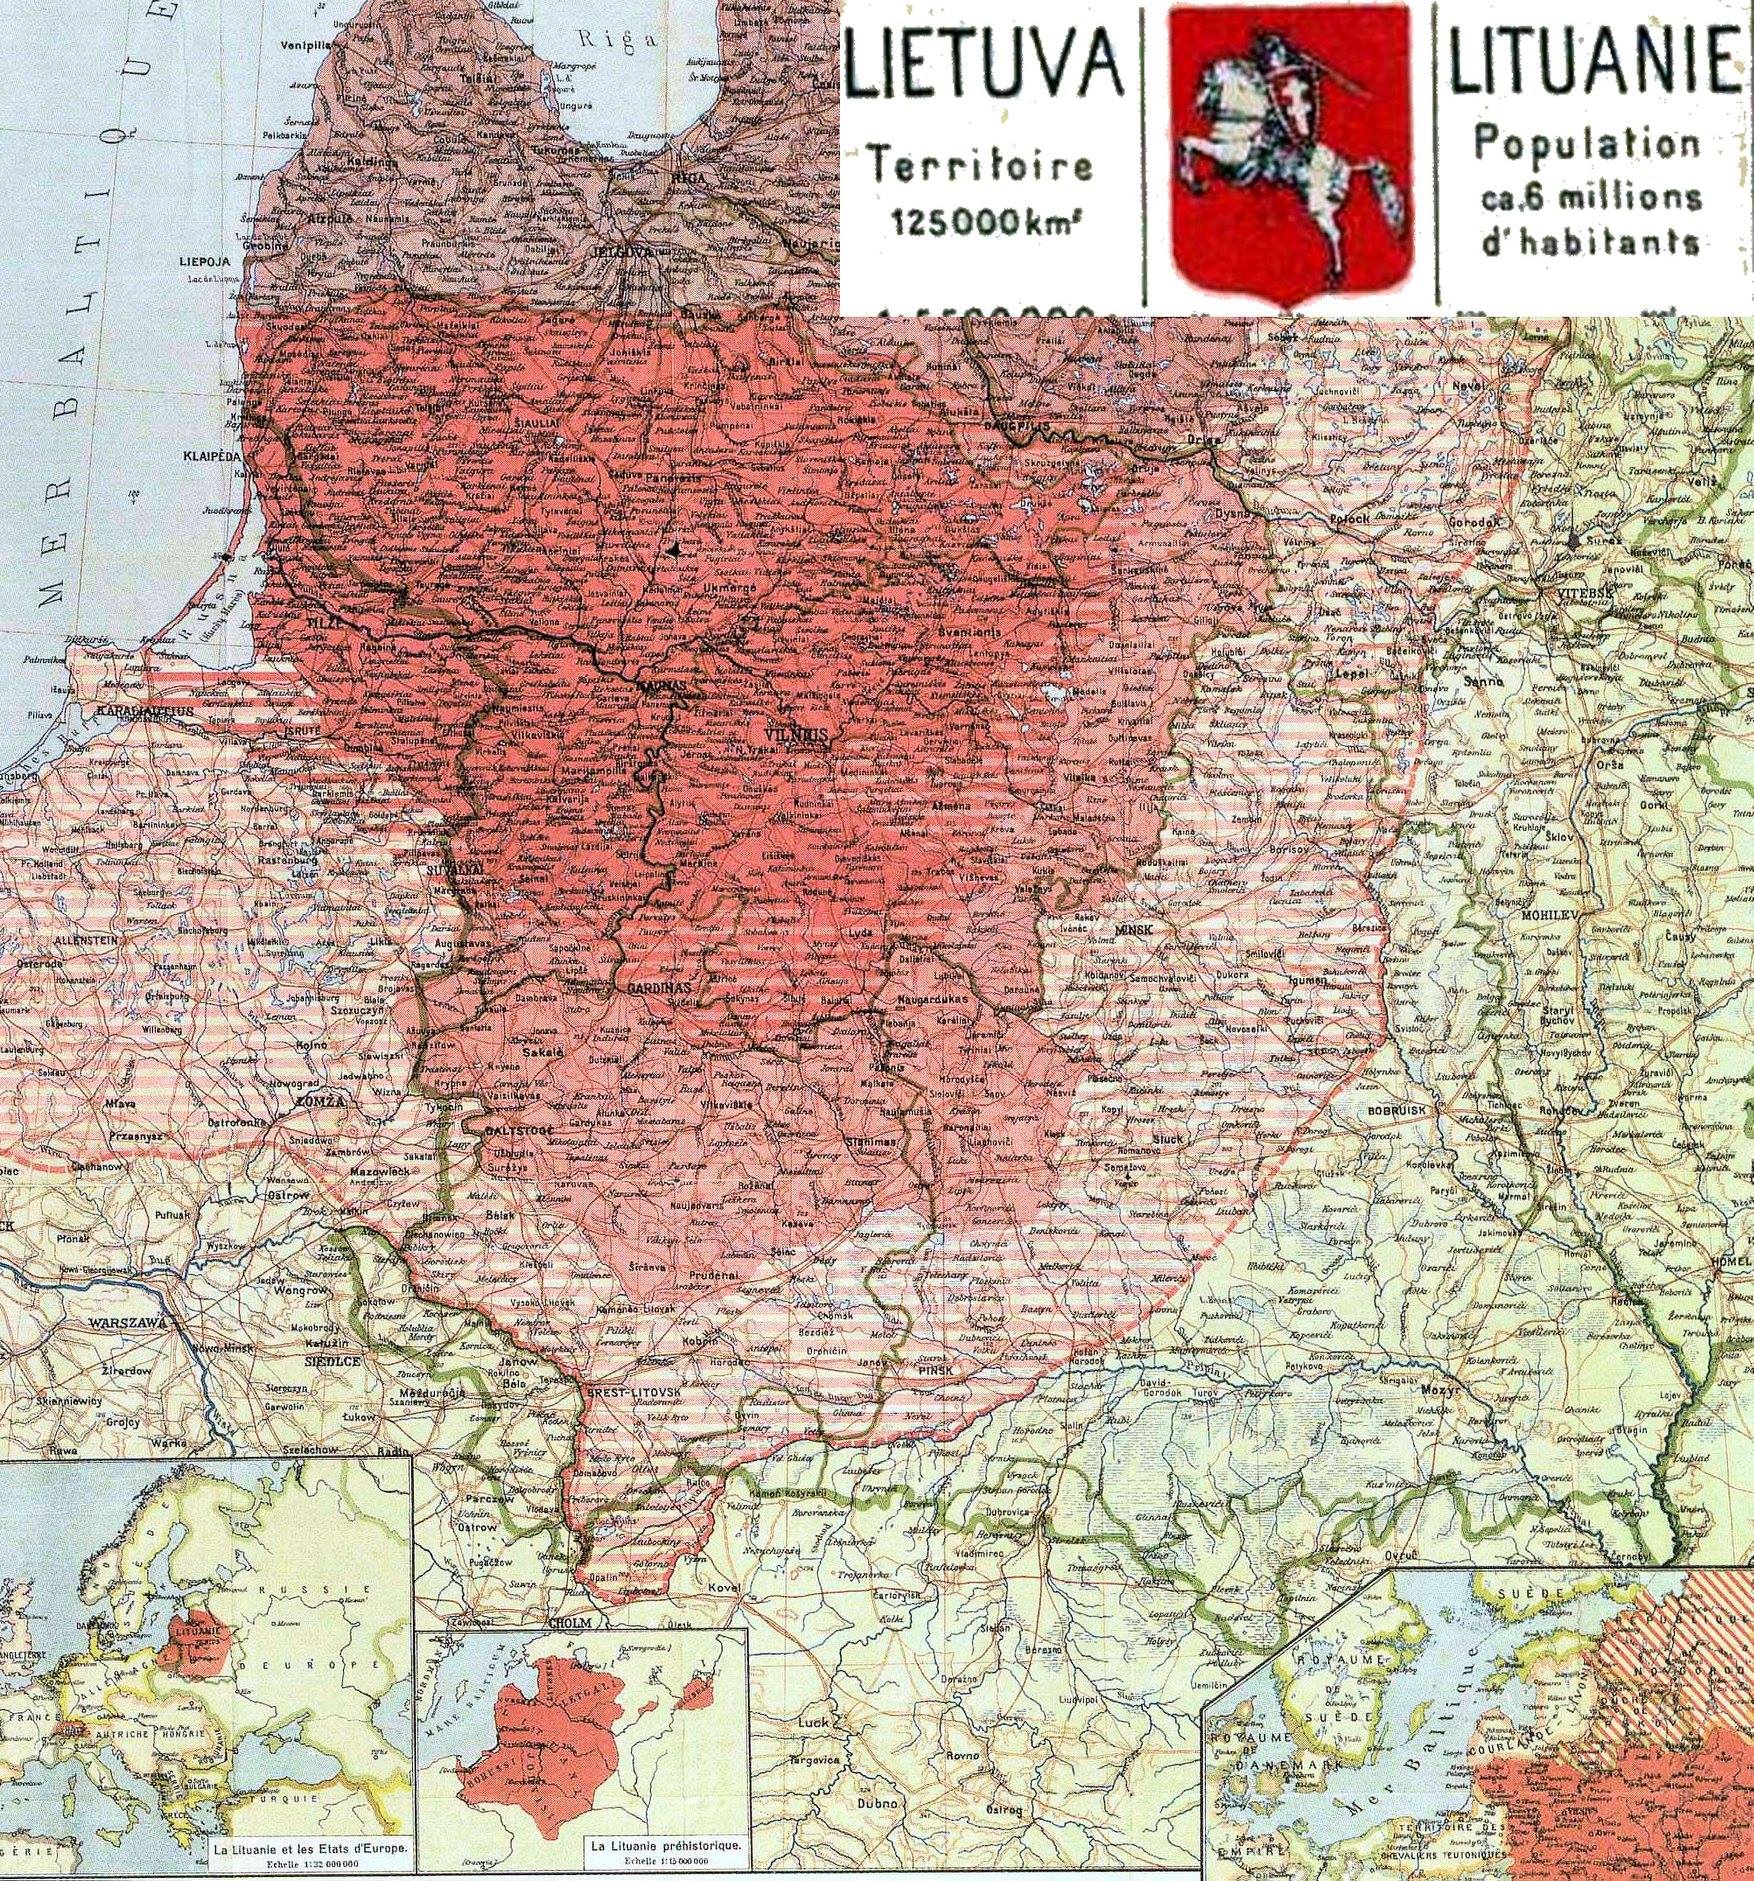 1918 m. planuota Lietuvos teritorija.jpg